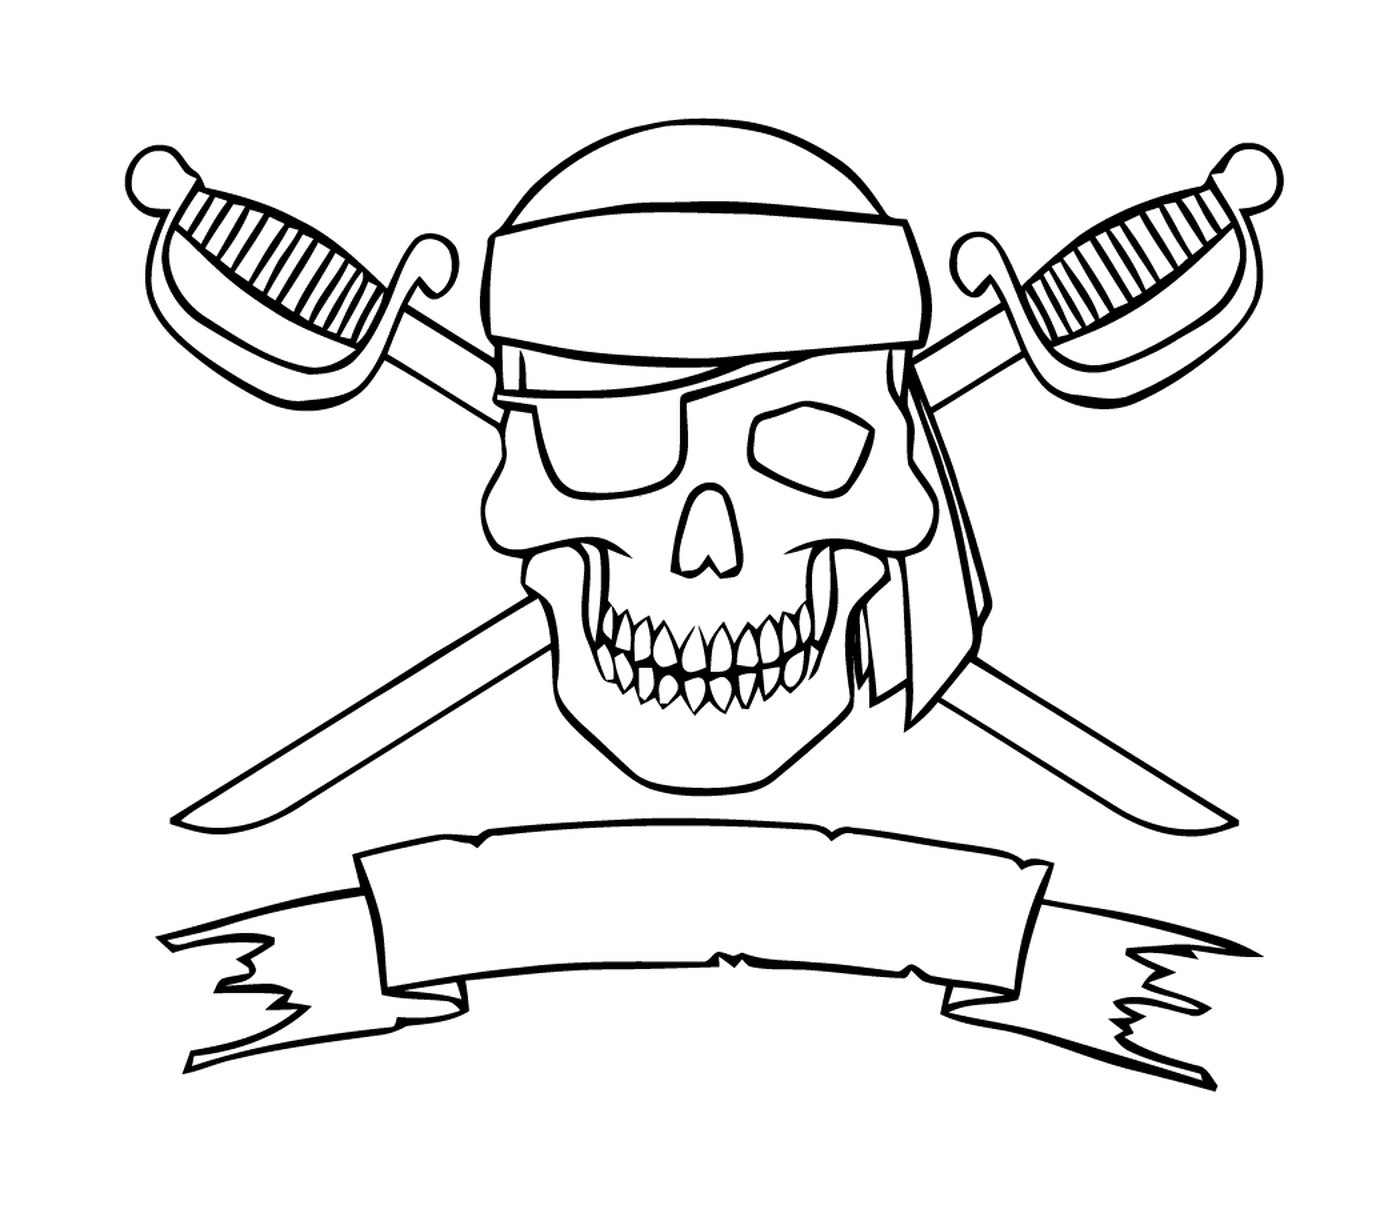   Logo pirate effrayant, épées croisées 